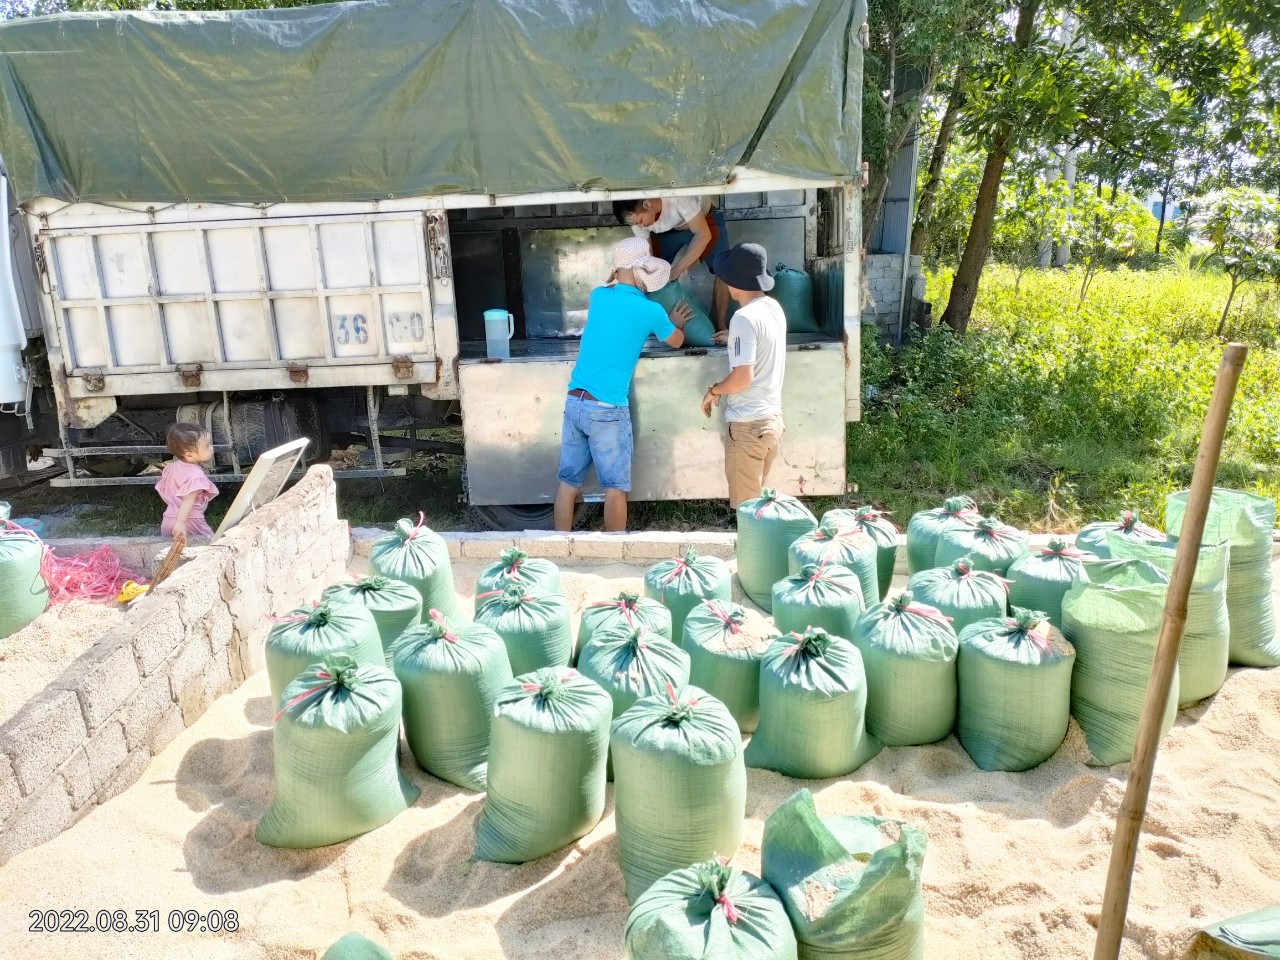 Apuwa Việt Nam, nhà cung cấp cát, sỏi thạch anh và than hoạt tính tại các tỉnh phía Bắc